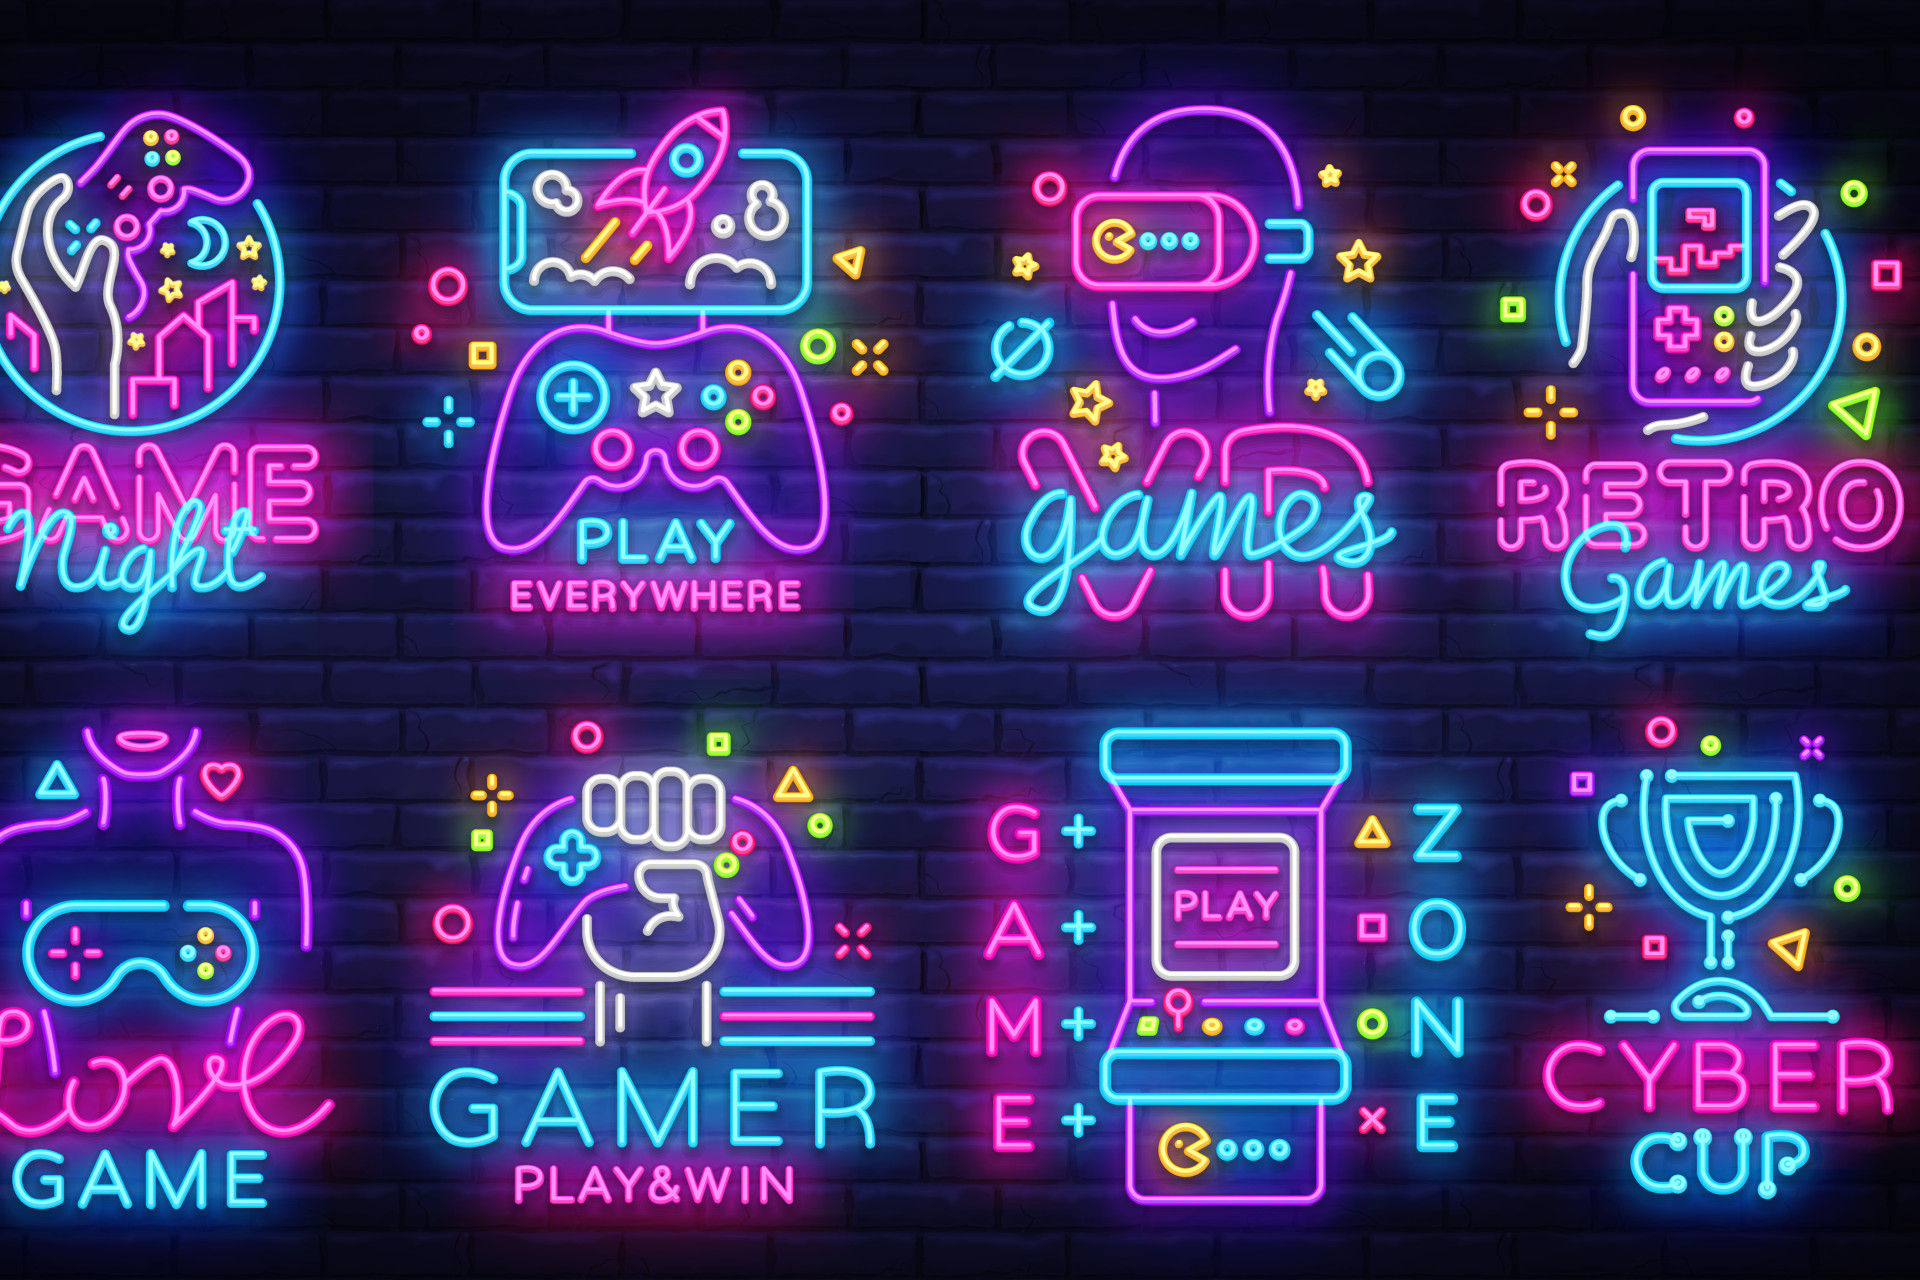 Pictogrammes en néons représentant différents types de jeux vidéo. 